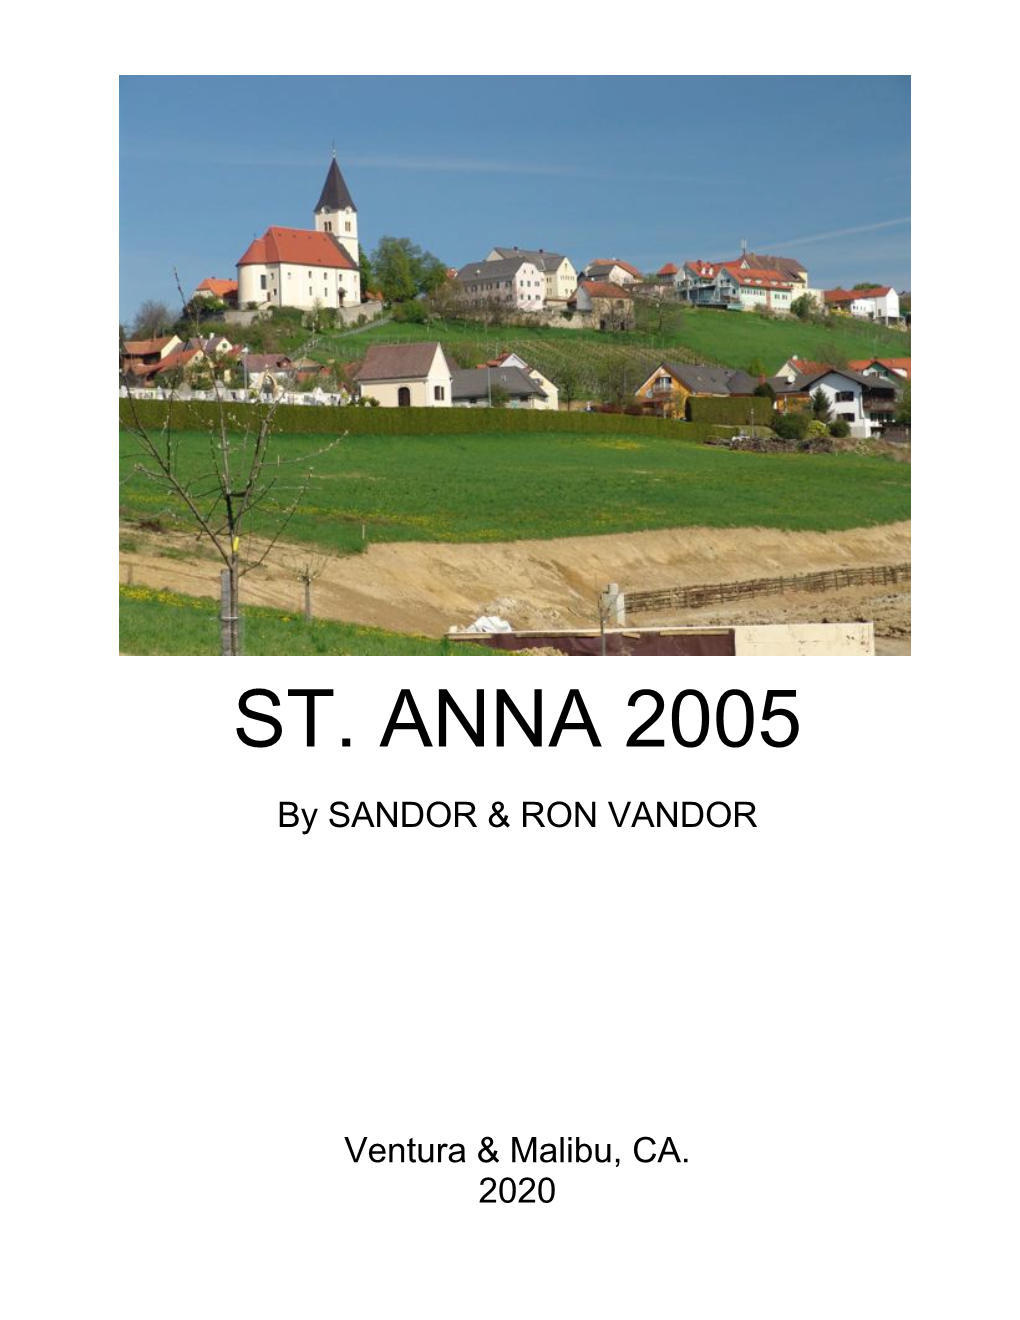 St. Anna 2005